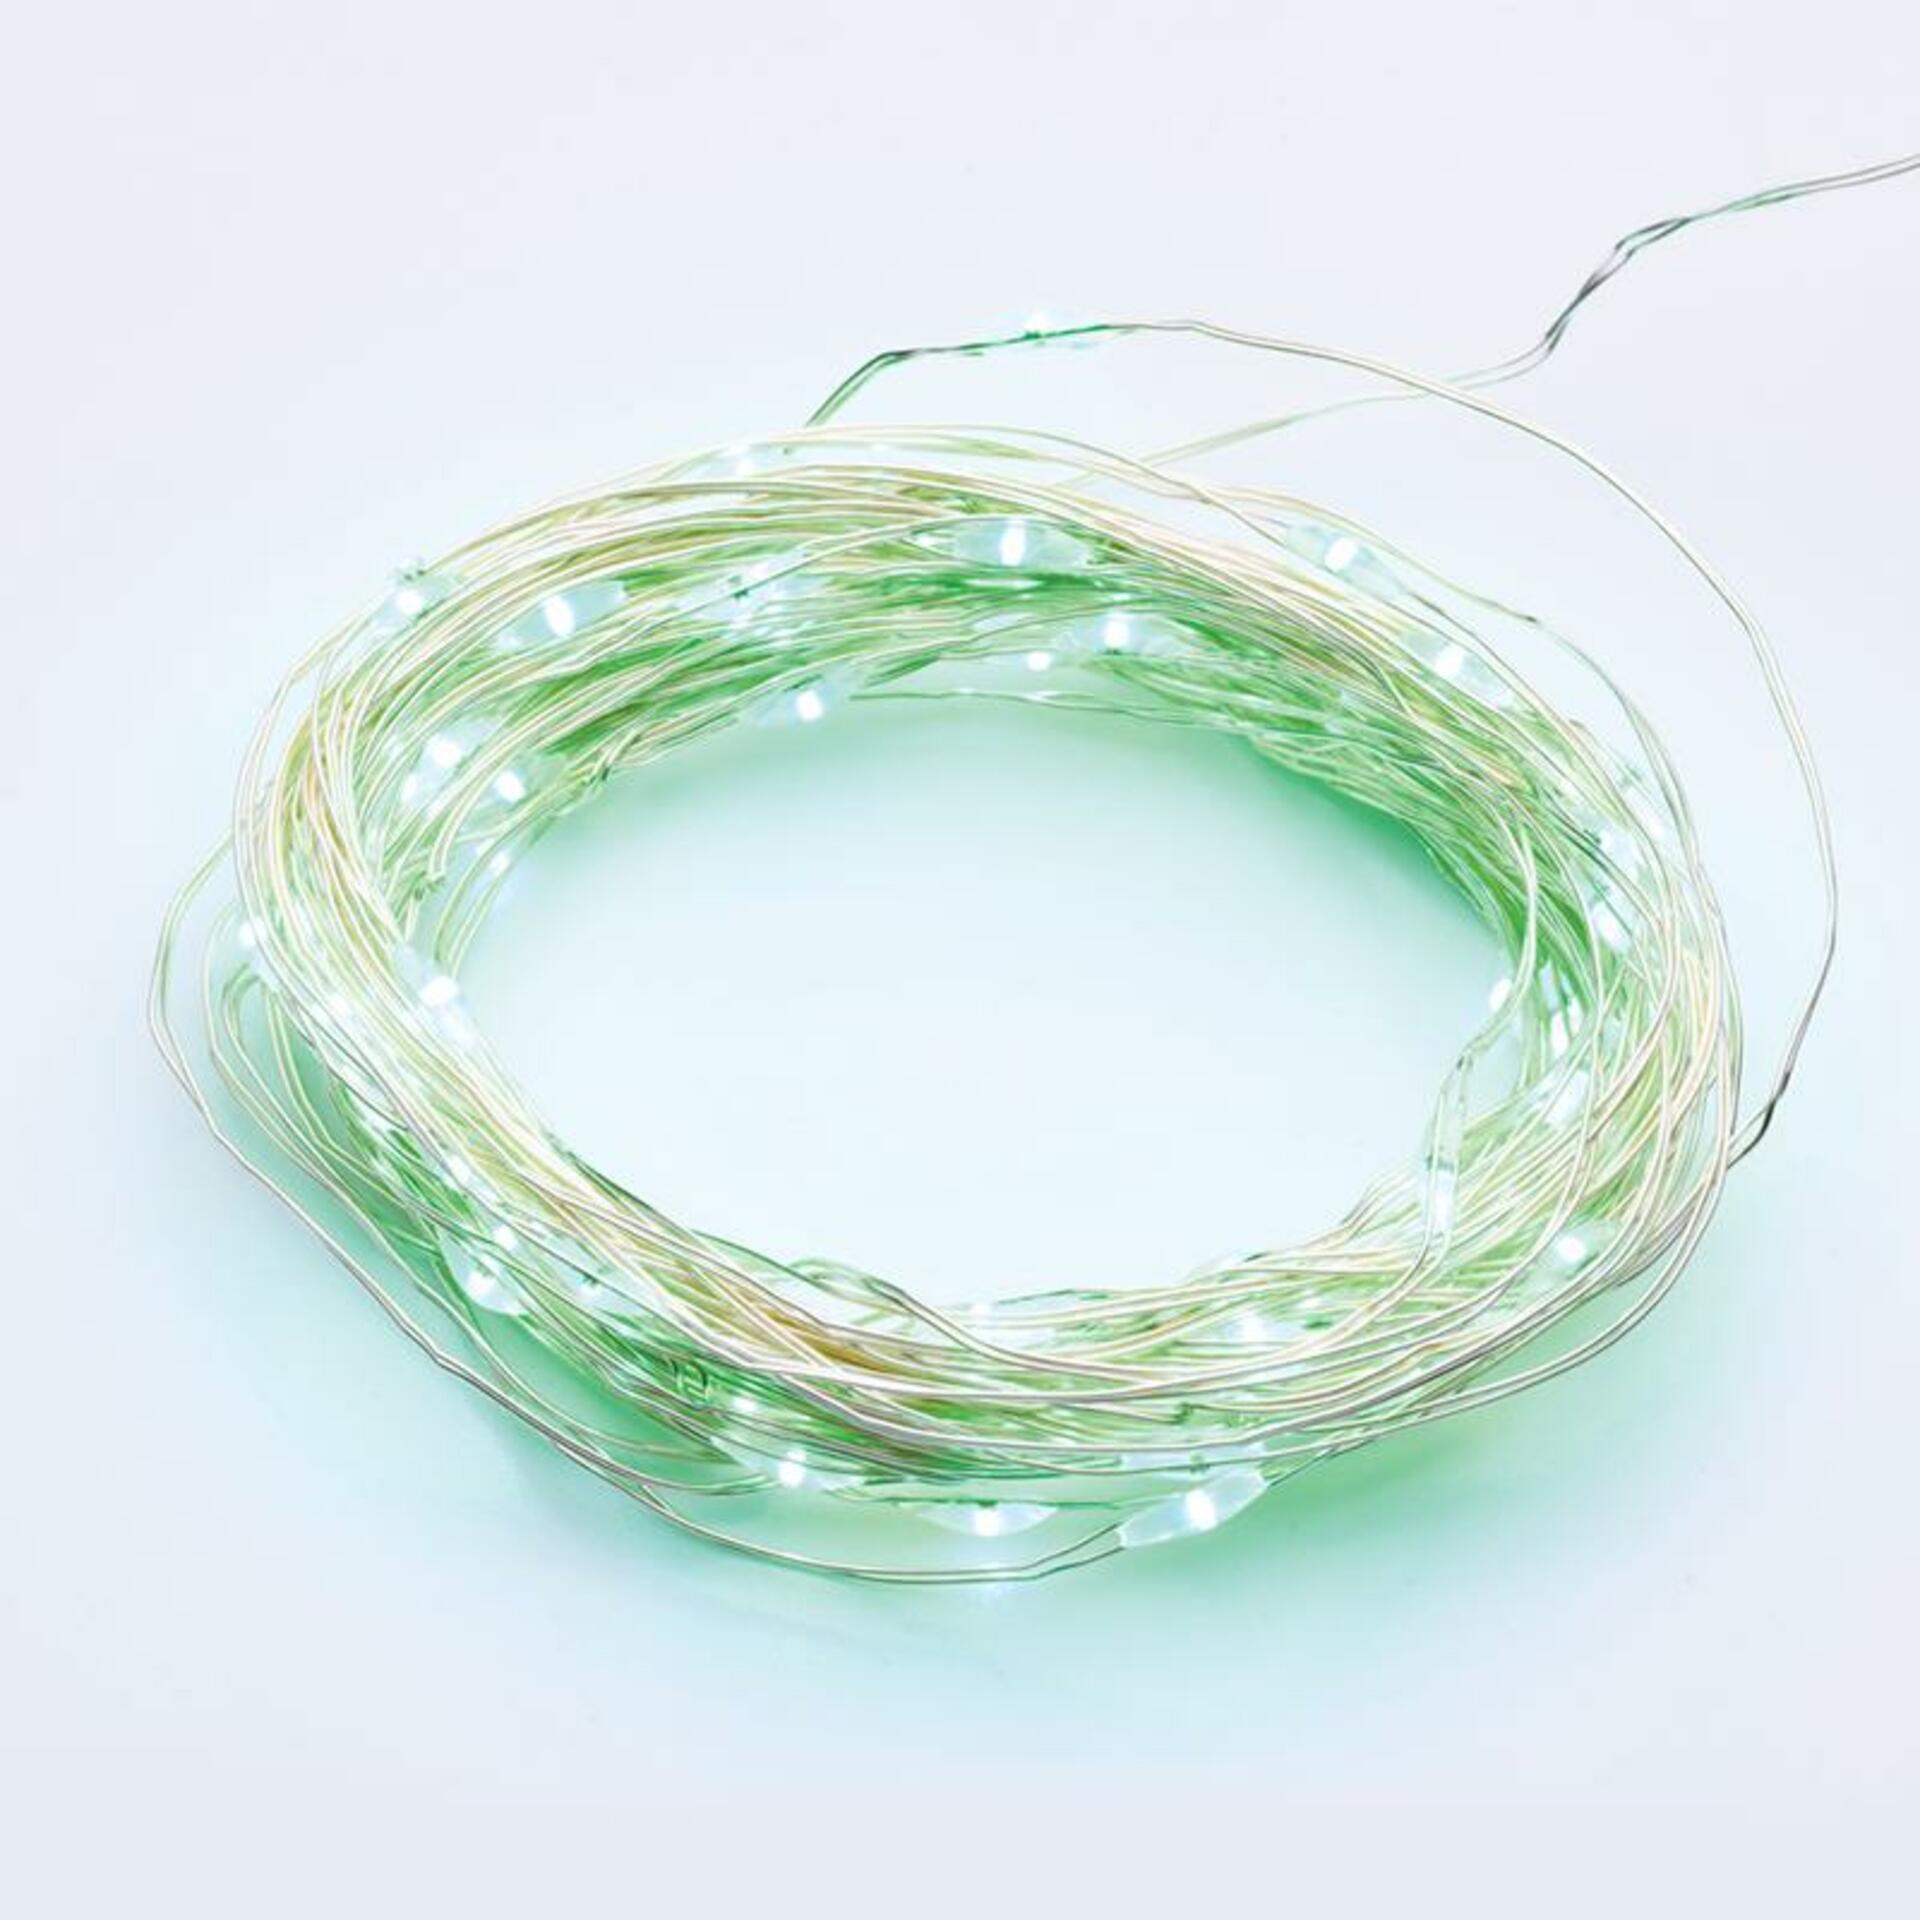 Levně ACA Lighting 100 LED dekorační řetěz zelená stříbrný měďený kabel 220-240V + 8 funkcí IP44 10m+3m 1.8W X01100512